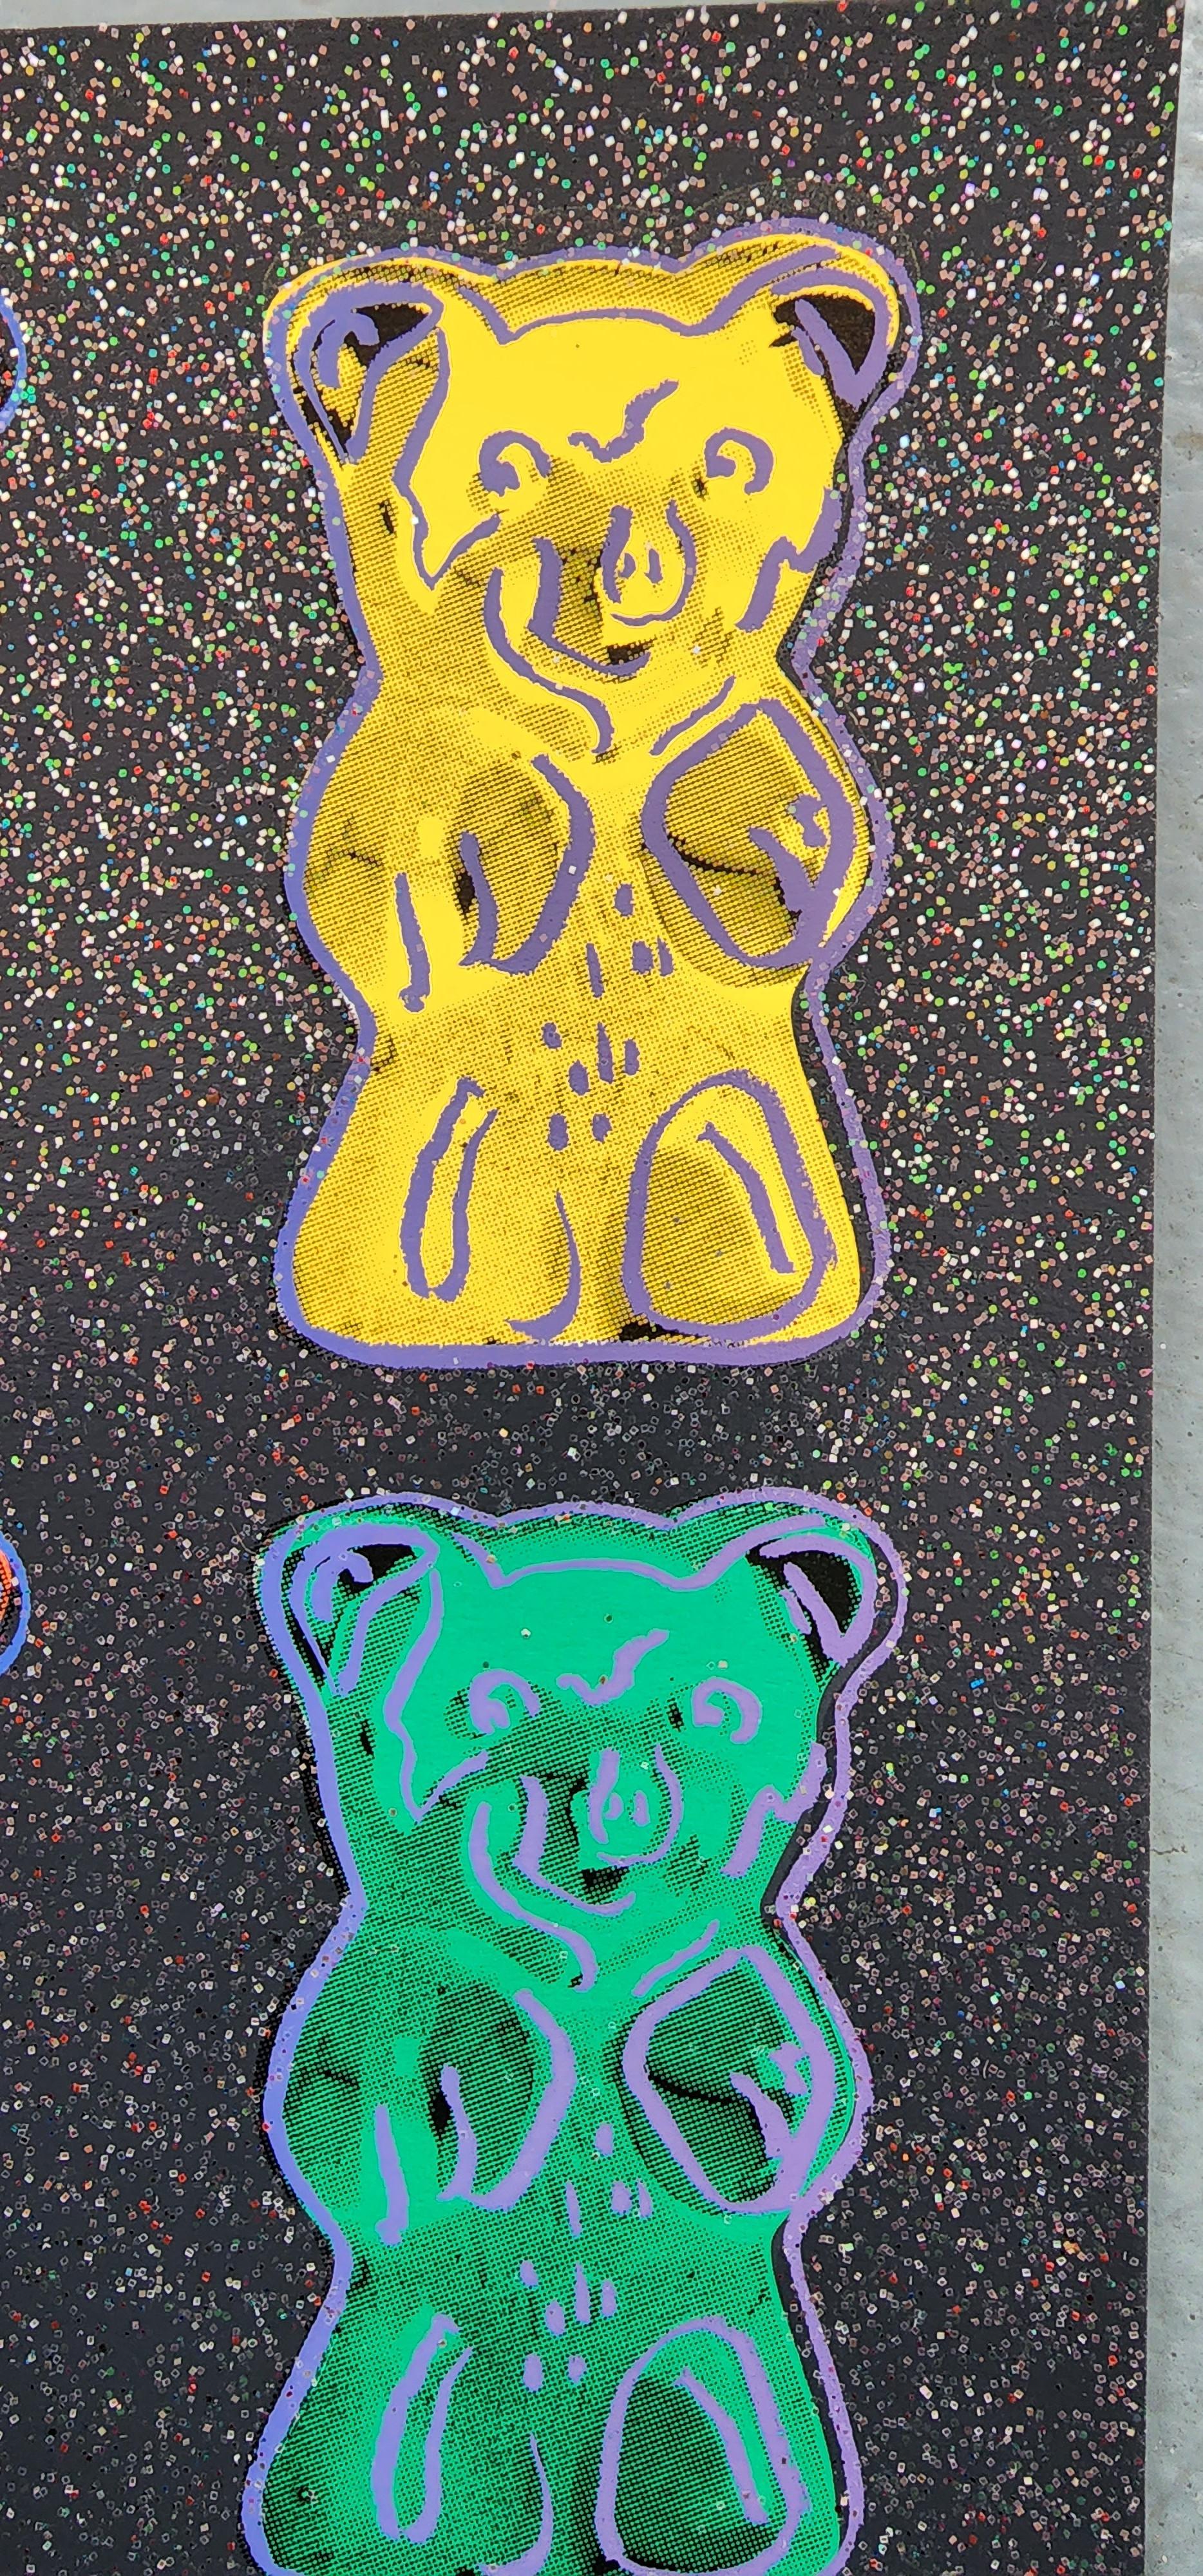 Gummi Bears #2 with Glitter Small - BLACK (Pop Art, Andy Warhol)  1